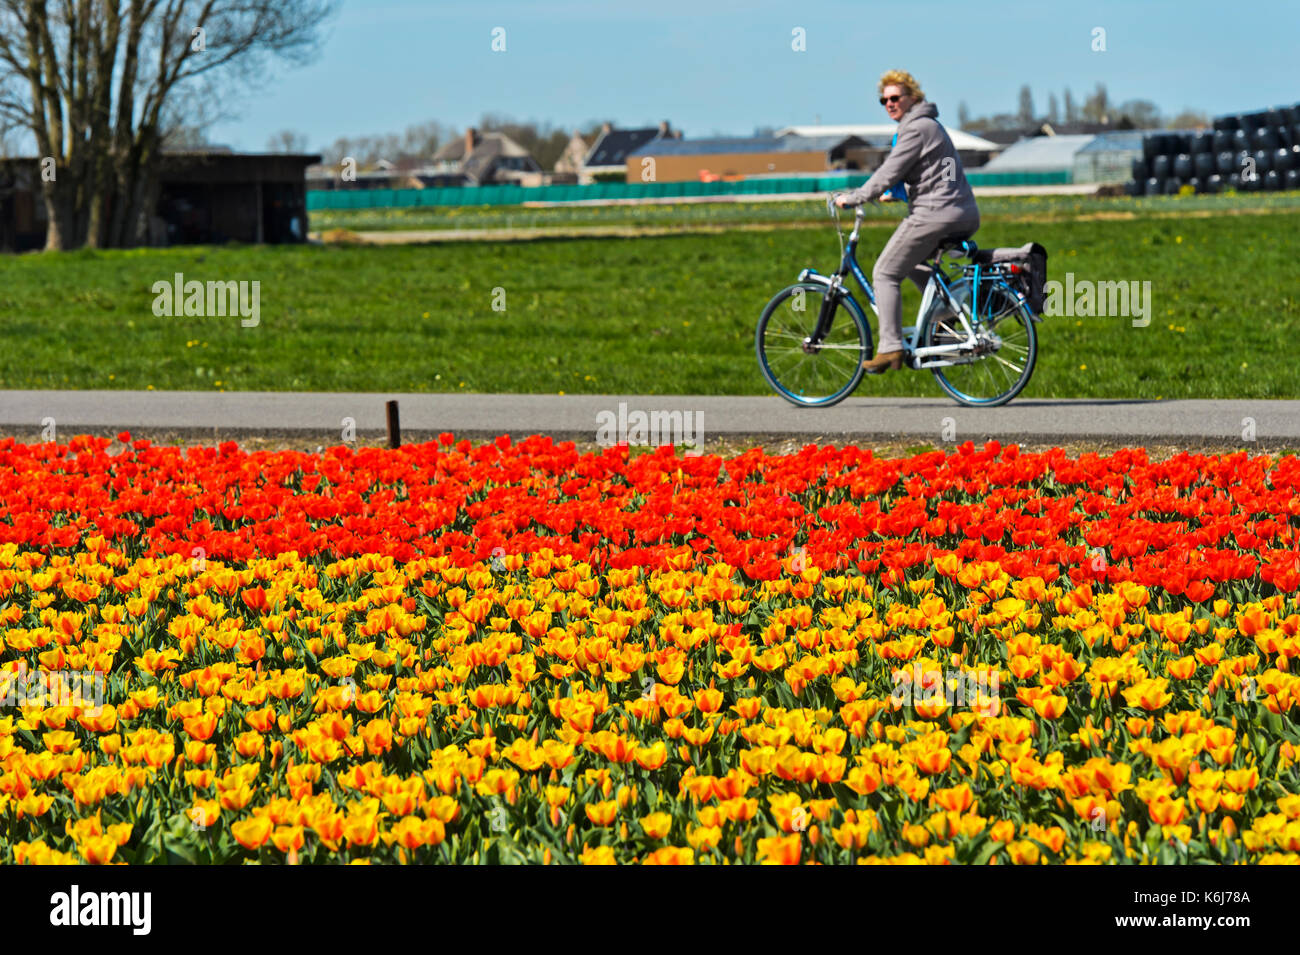 Les femmes sur un vélo à la recherche à un champ de tulipes en fleurs dans la région de bollenstreek, voorhout, Pays-Bas Banque D'Images